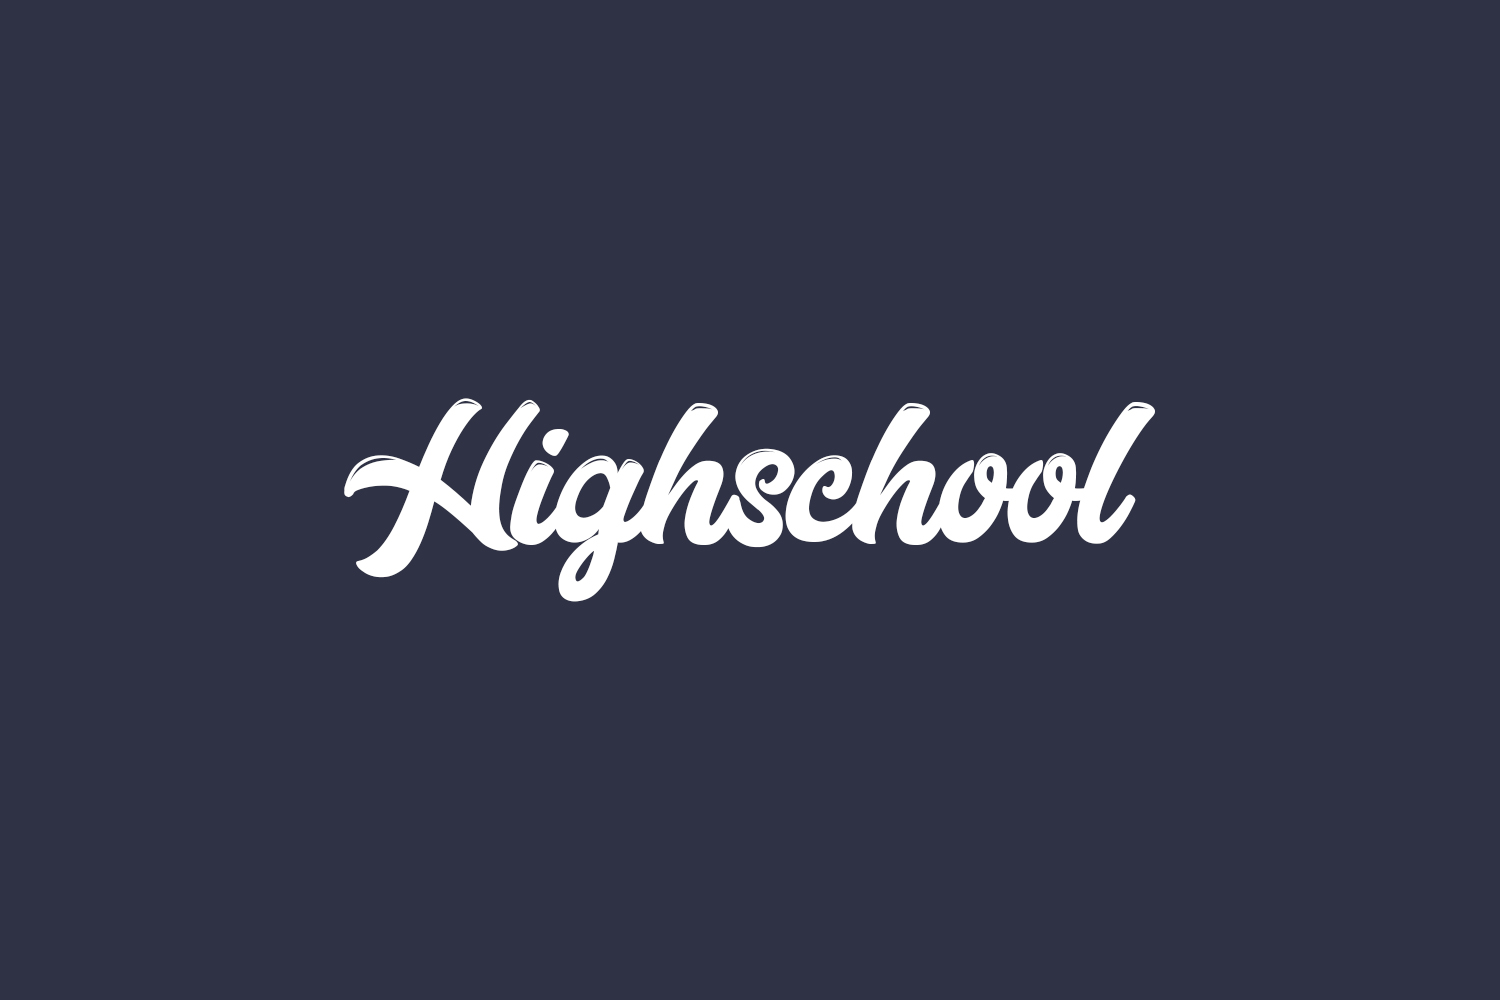 Highschool Free Font